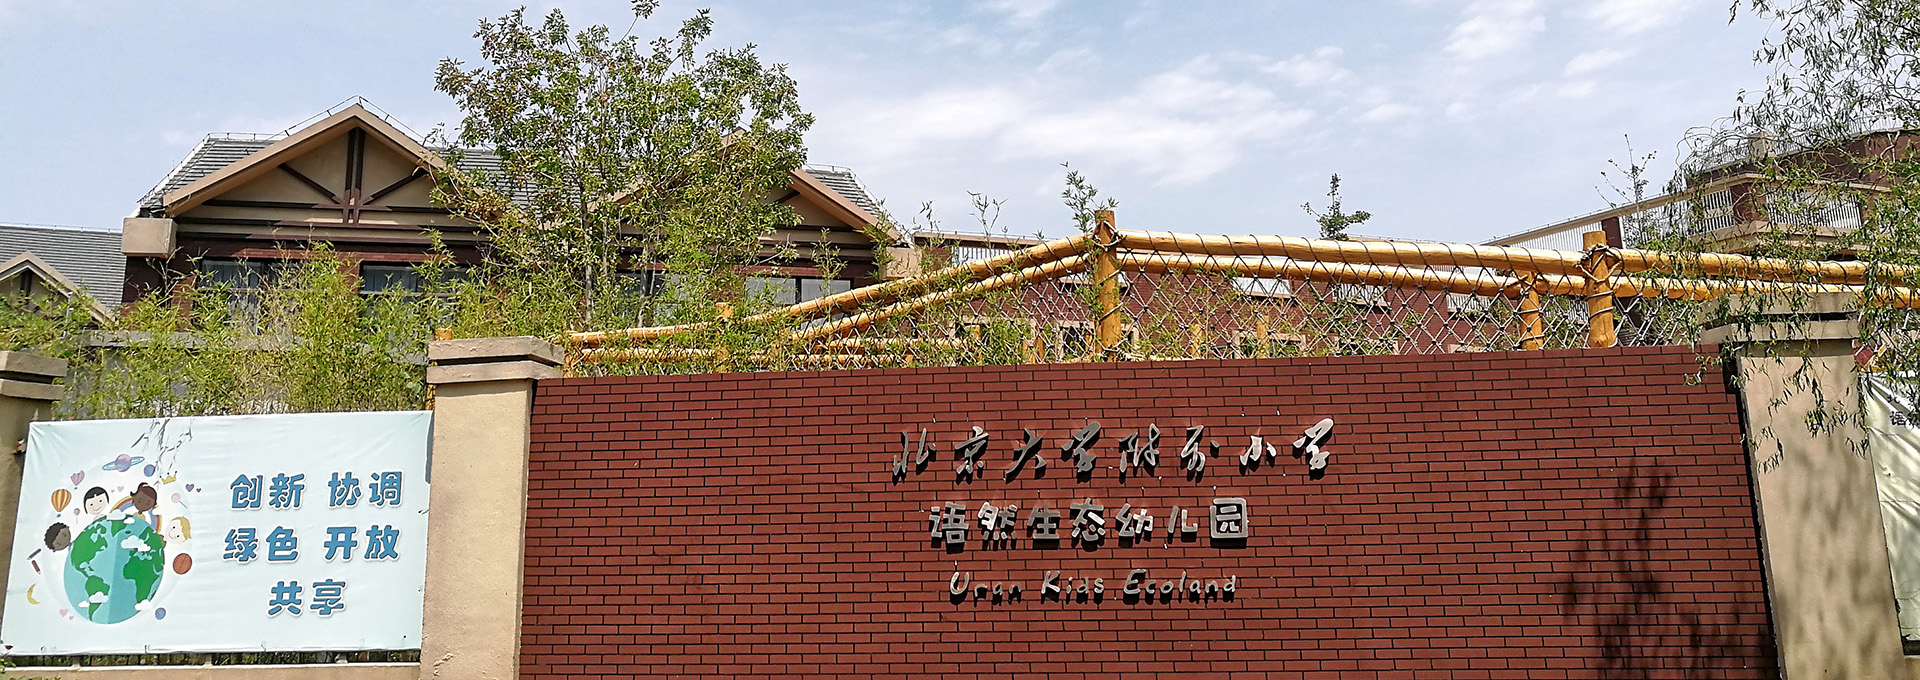 北京大学附属幼儿园图片